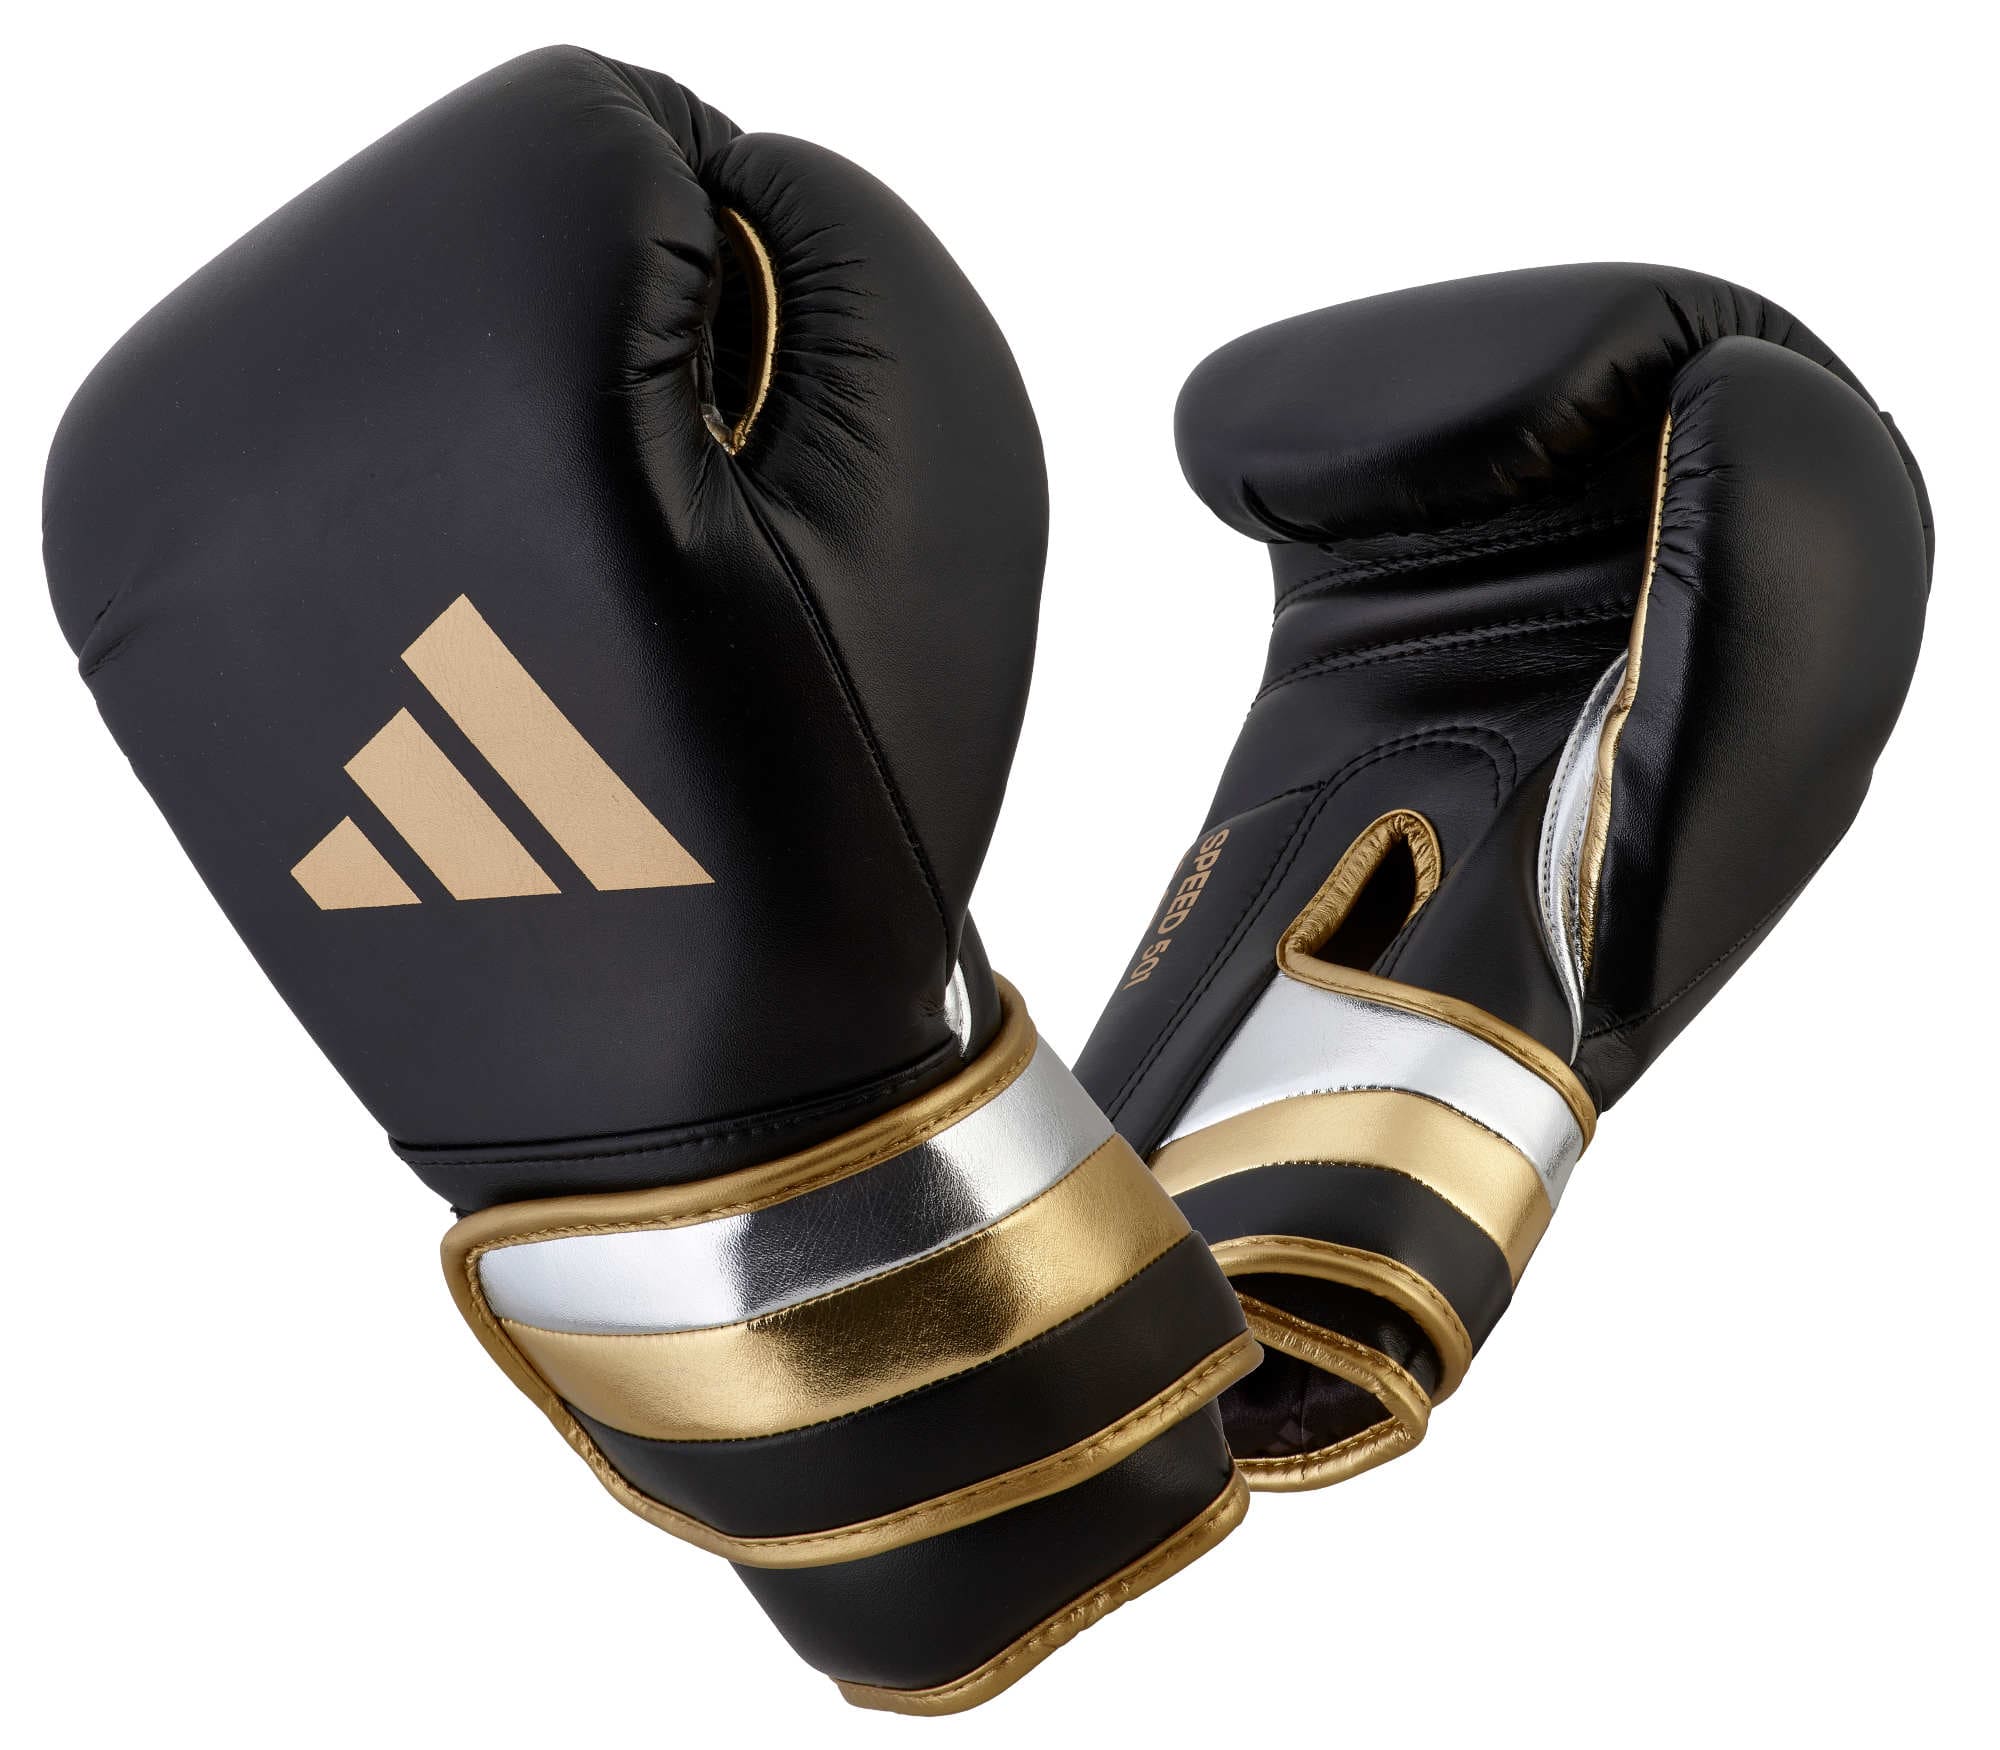 Adidas Boxhandschuhe SPEED 500 Schwarz/Gold Online kaufen ✓ | EMPAROR